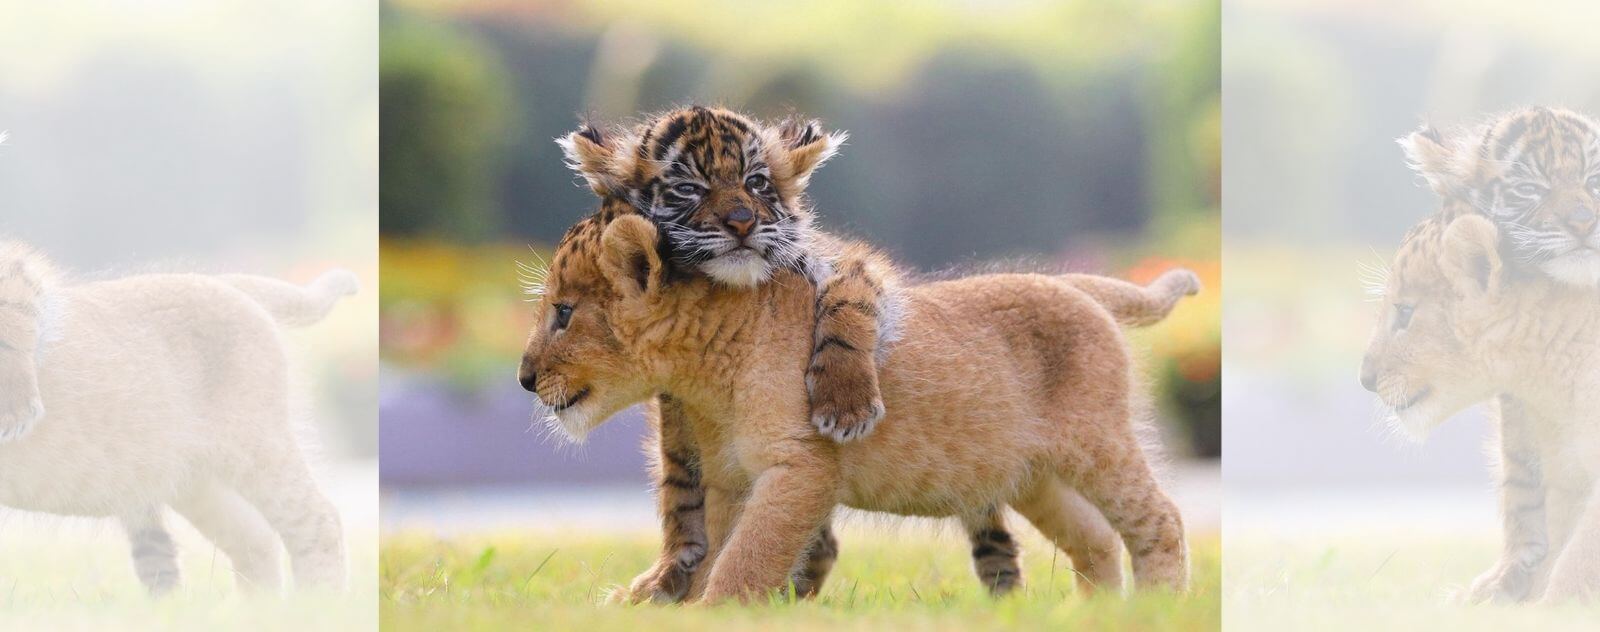 Tigreau sur un Lionceau (Lion et Tigre)